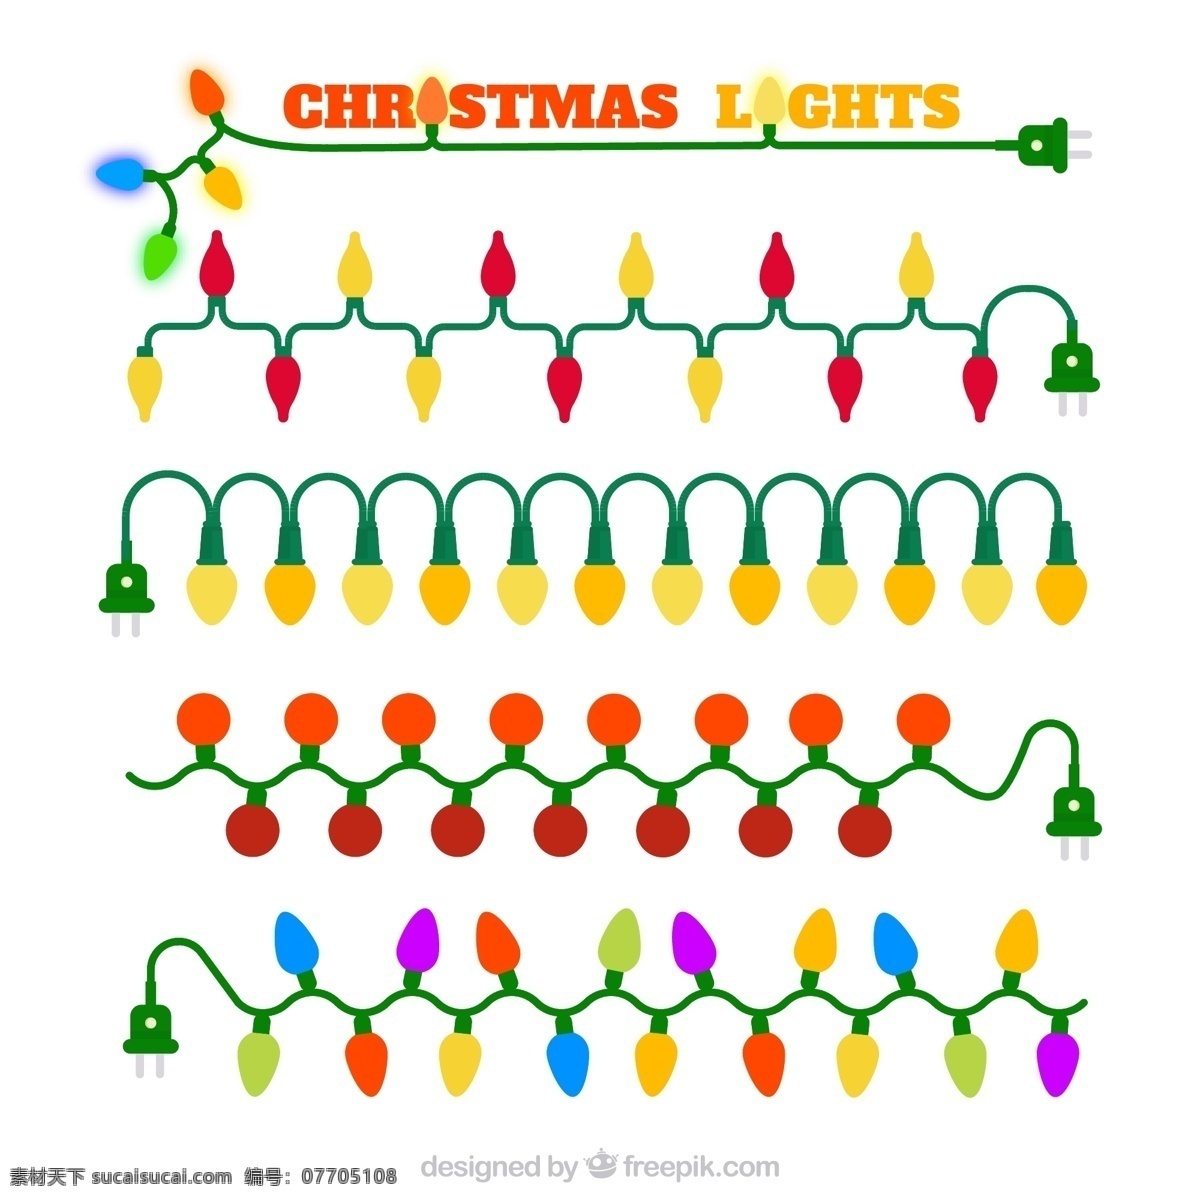 五颜六色 圣诞 灯 矢量圣诞灯 圣诞灯 卡通圣诞灯